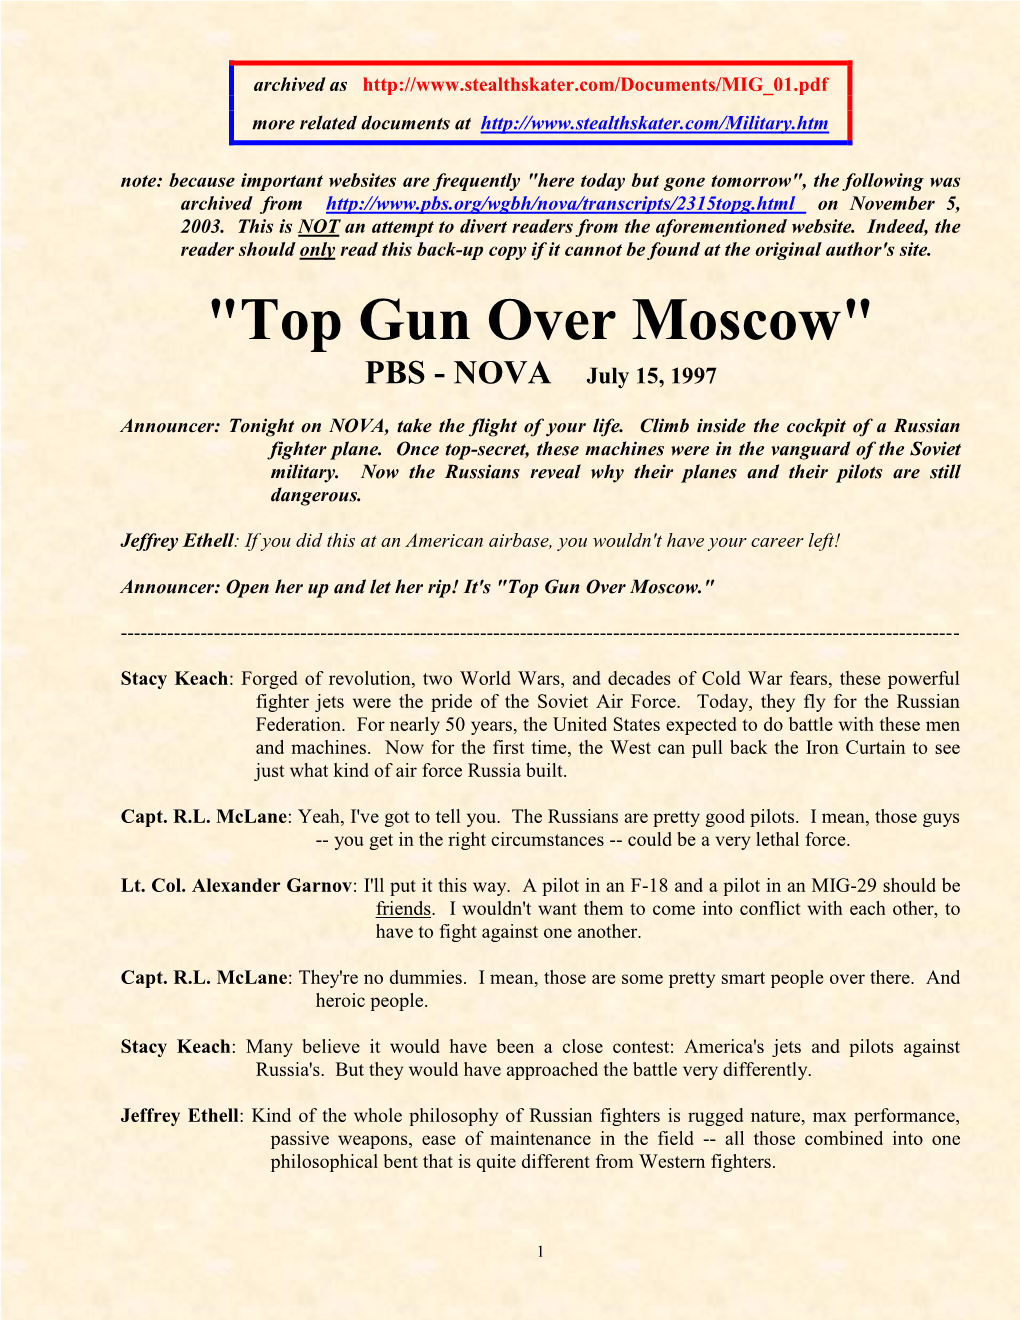 "Top Gun Over Moscow" PBS - NOVA July 15, 1997